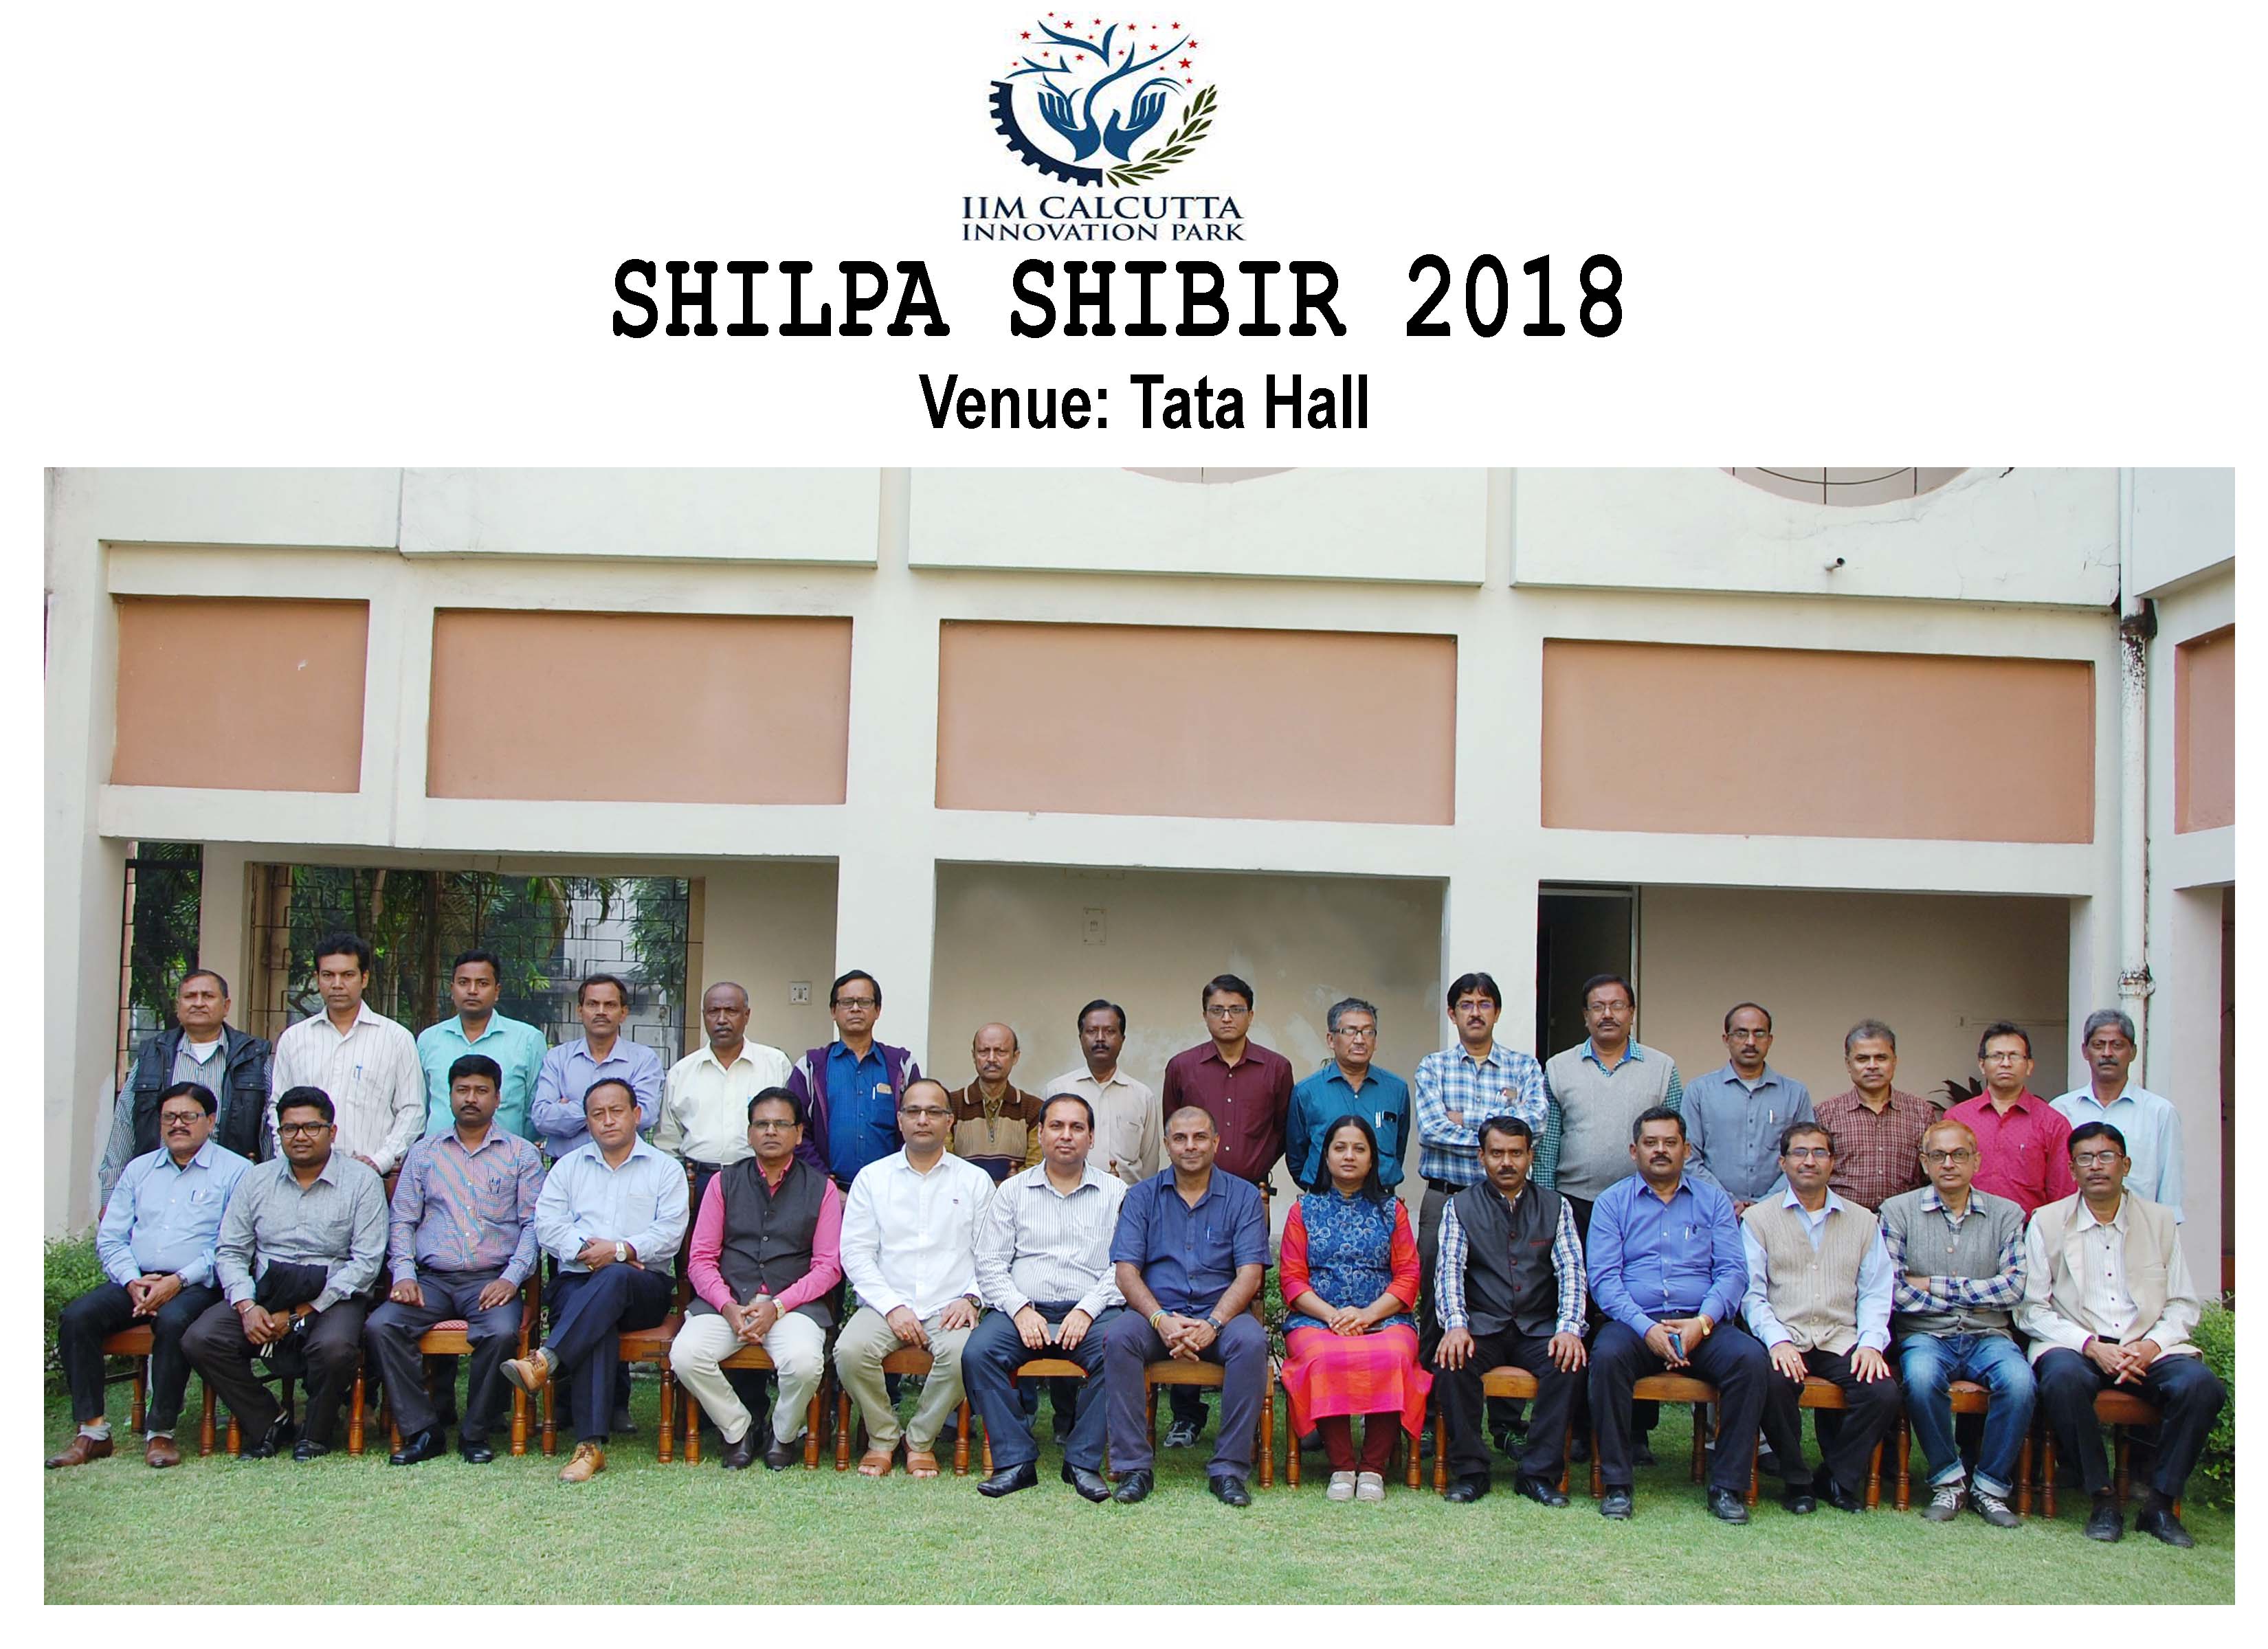 Shilpa Shibir 2018